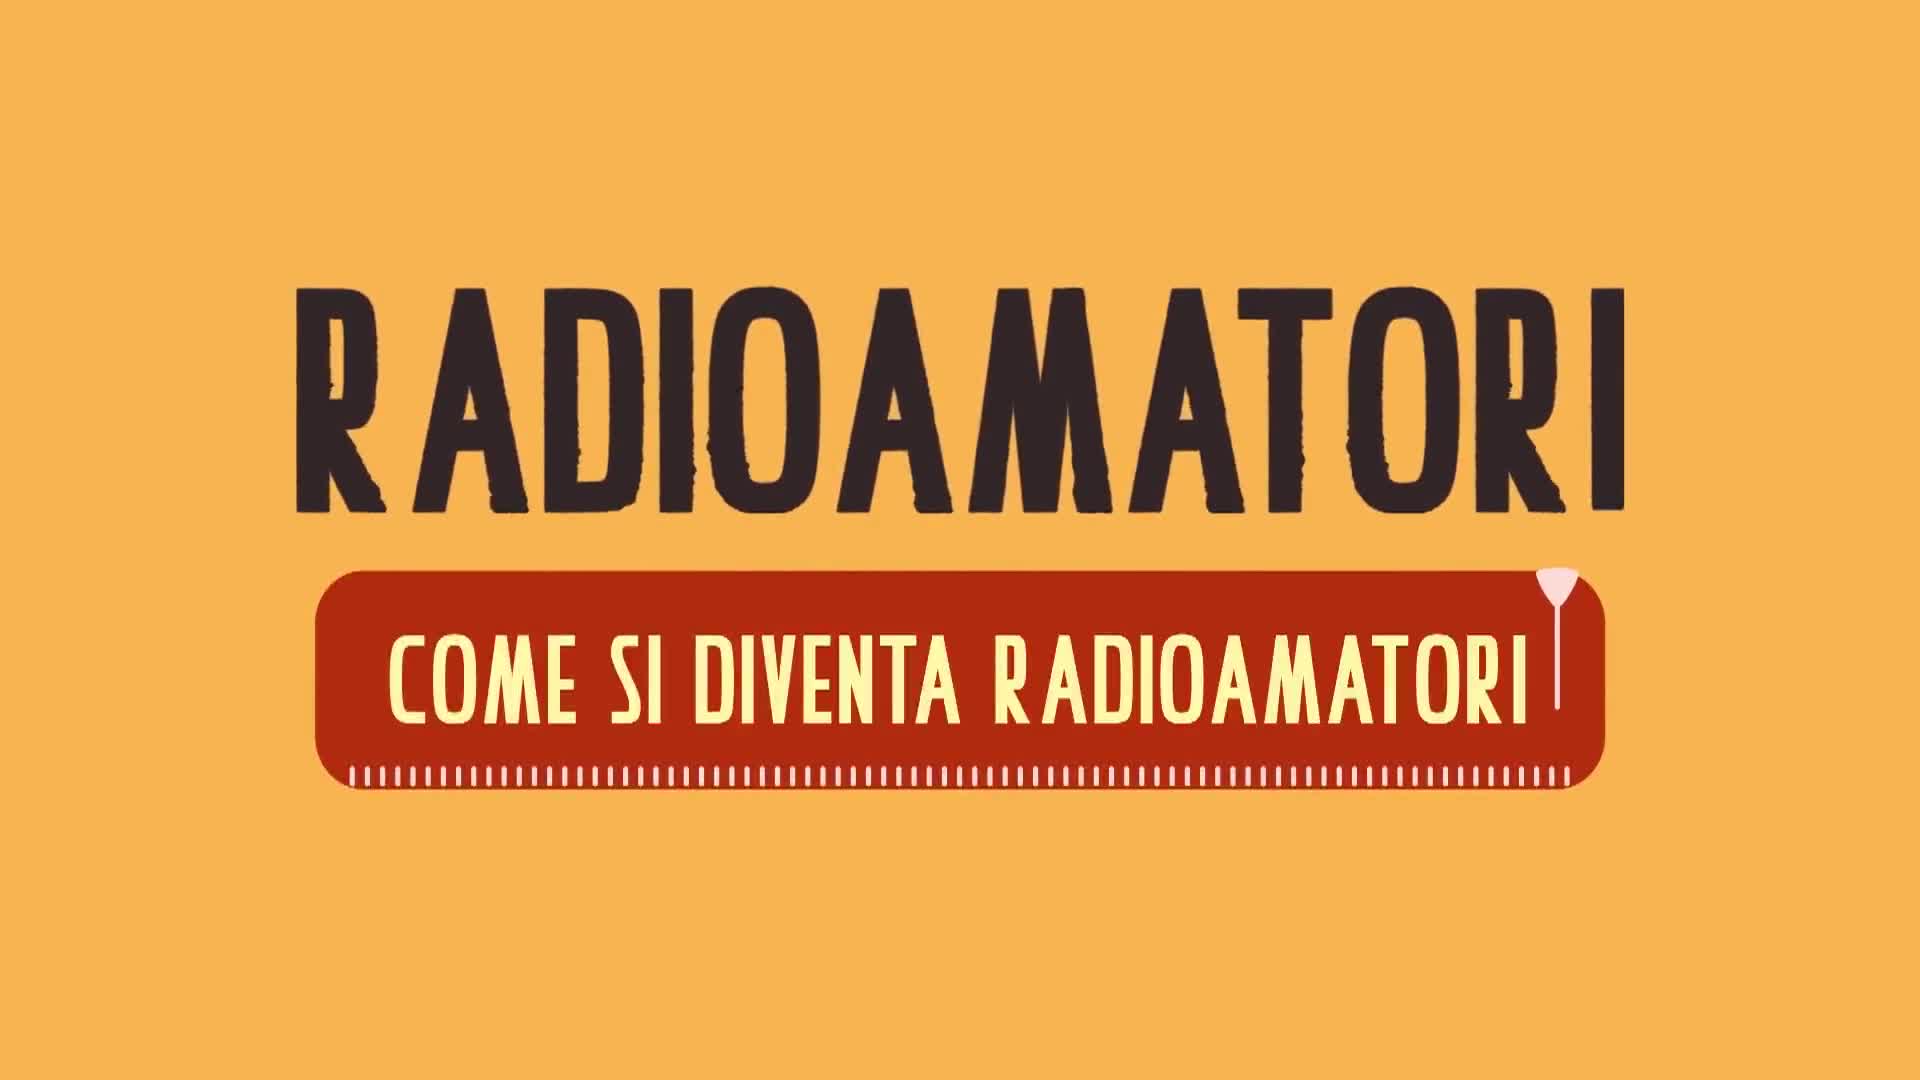 Radioamatori | Come si diventa radioamatori - immagine